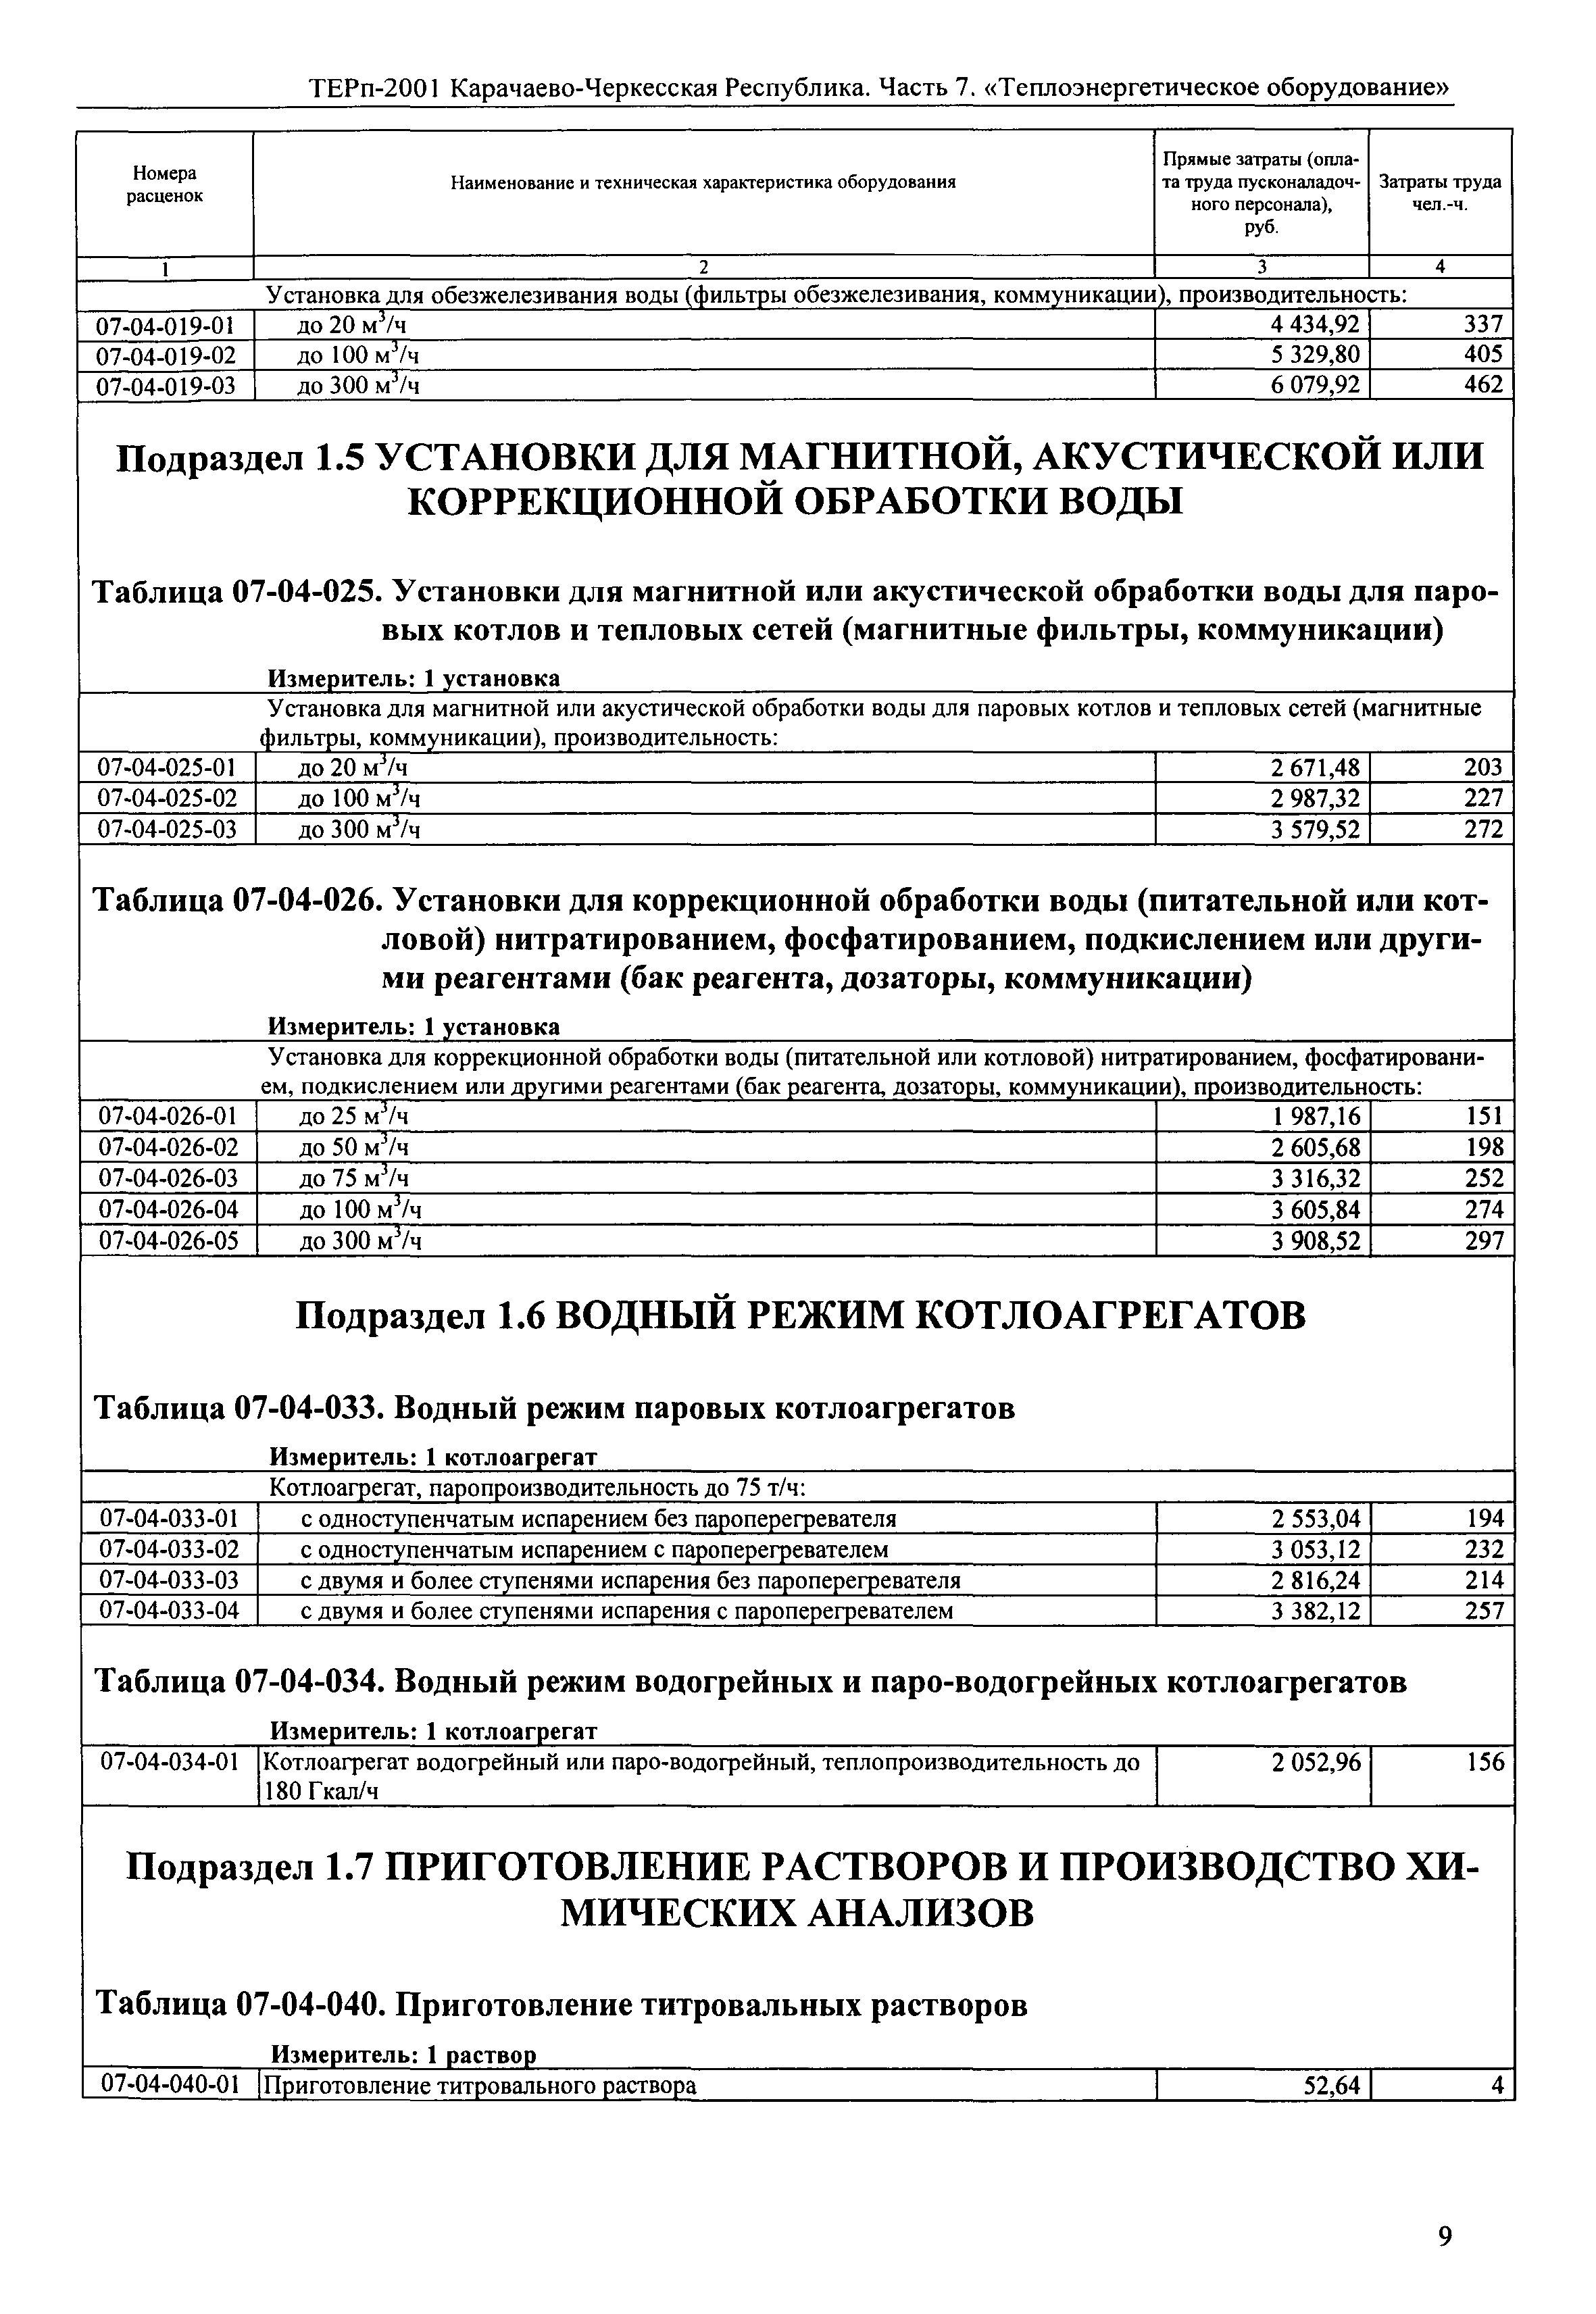 ТЕРп Карачаево-Черкесская Республика 07-2001